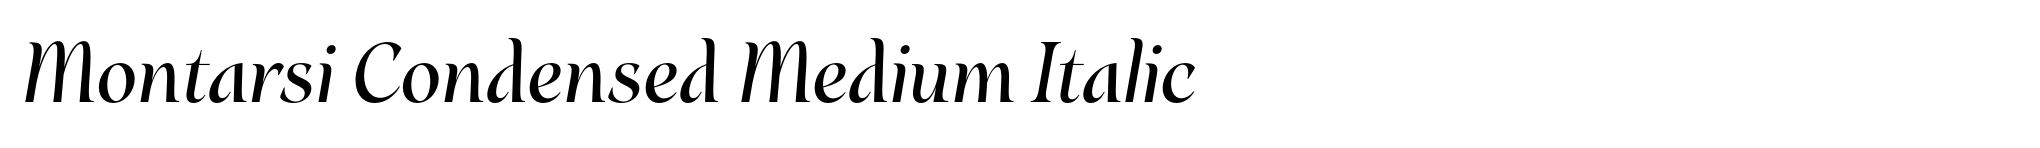 Montarsi Condensed Medium Italic image